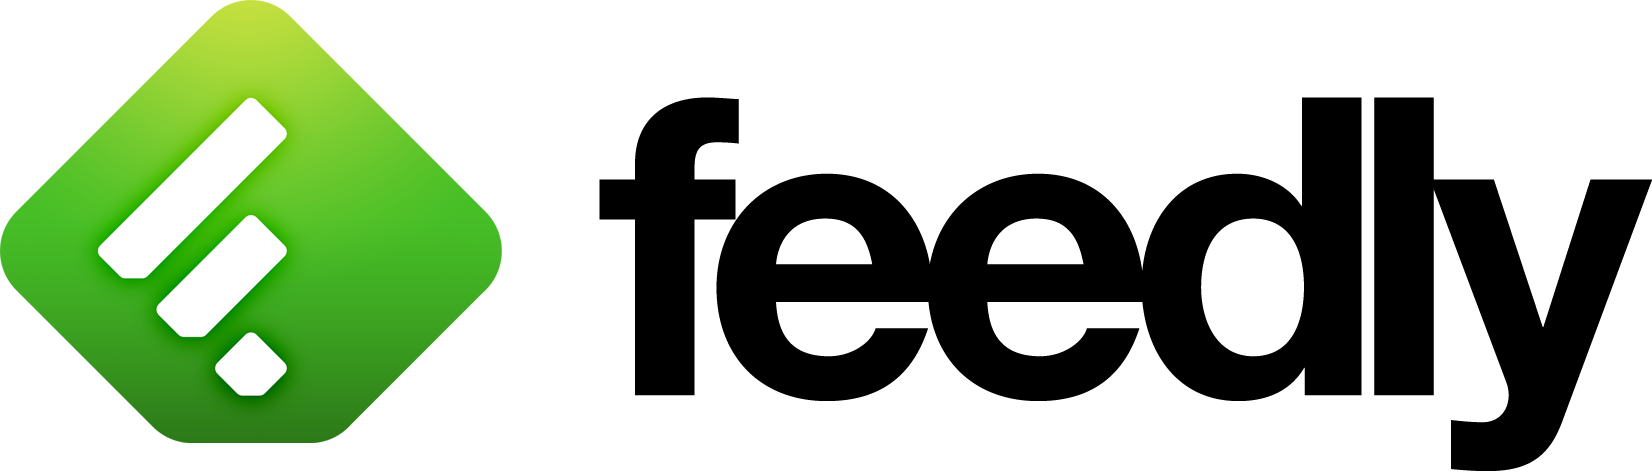 Feedly Logo - Black Color